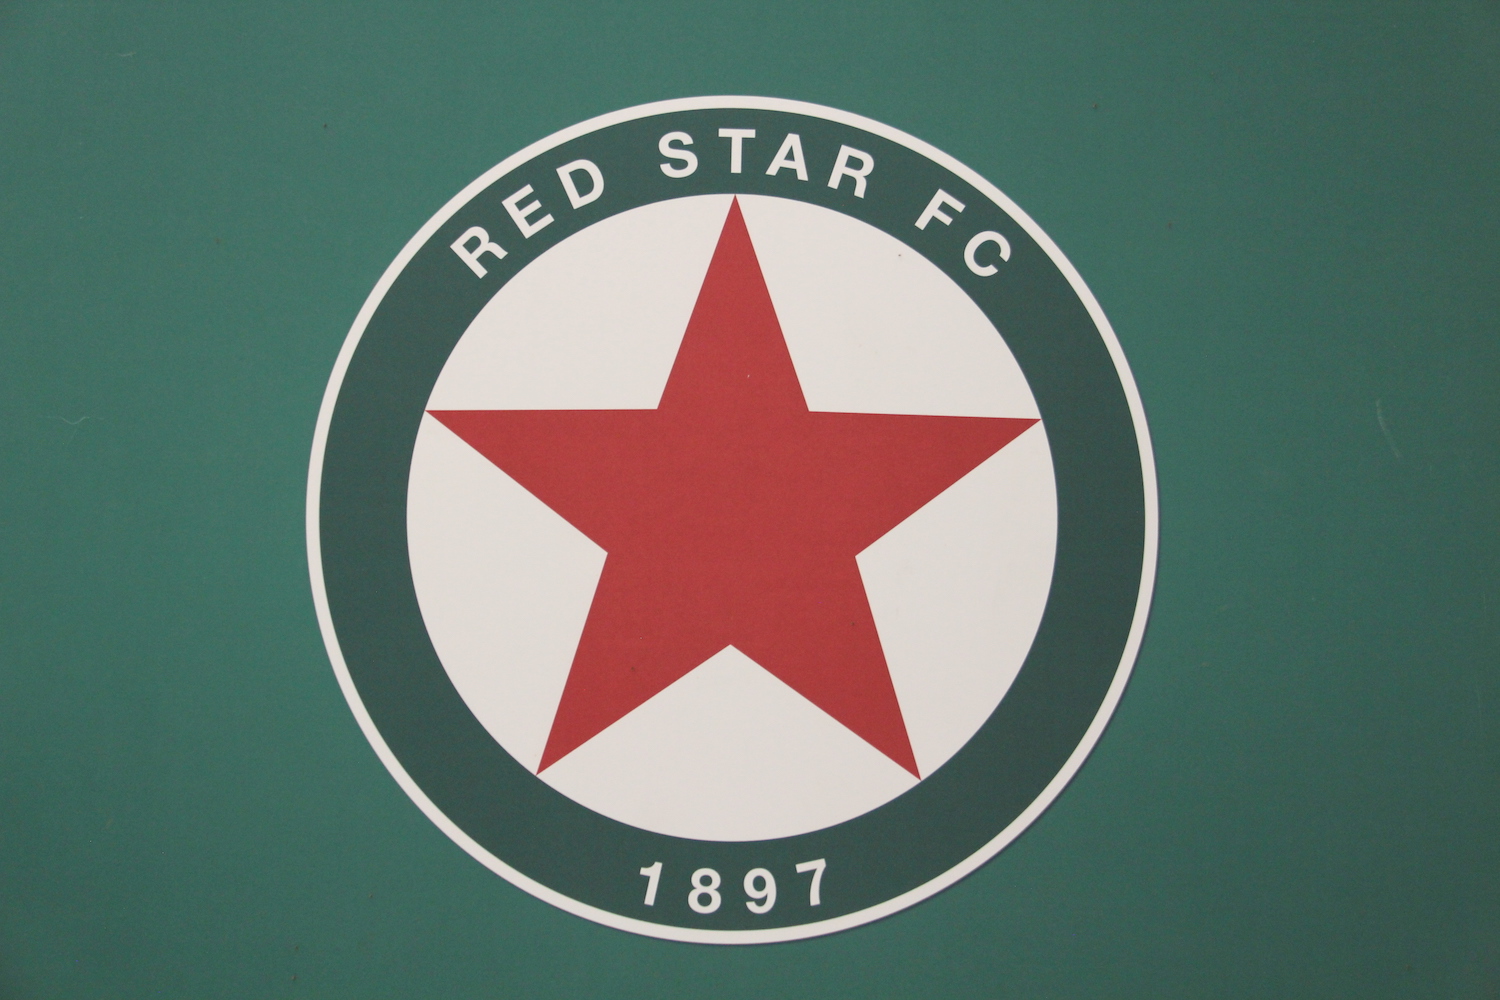 Le logo du Red Star, une étoile rouge bien connue © Globe Reporters